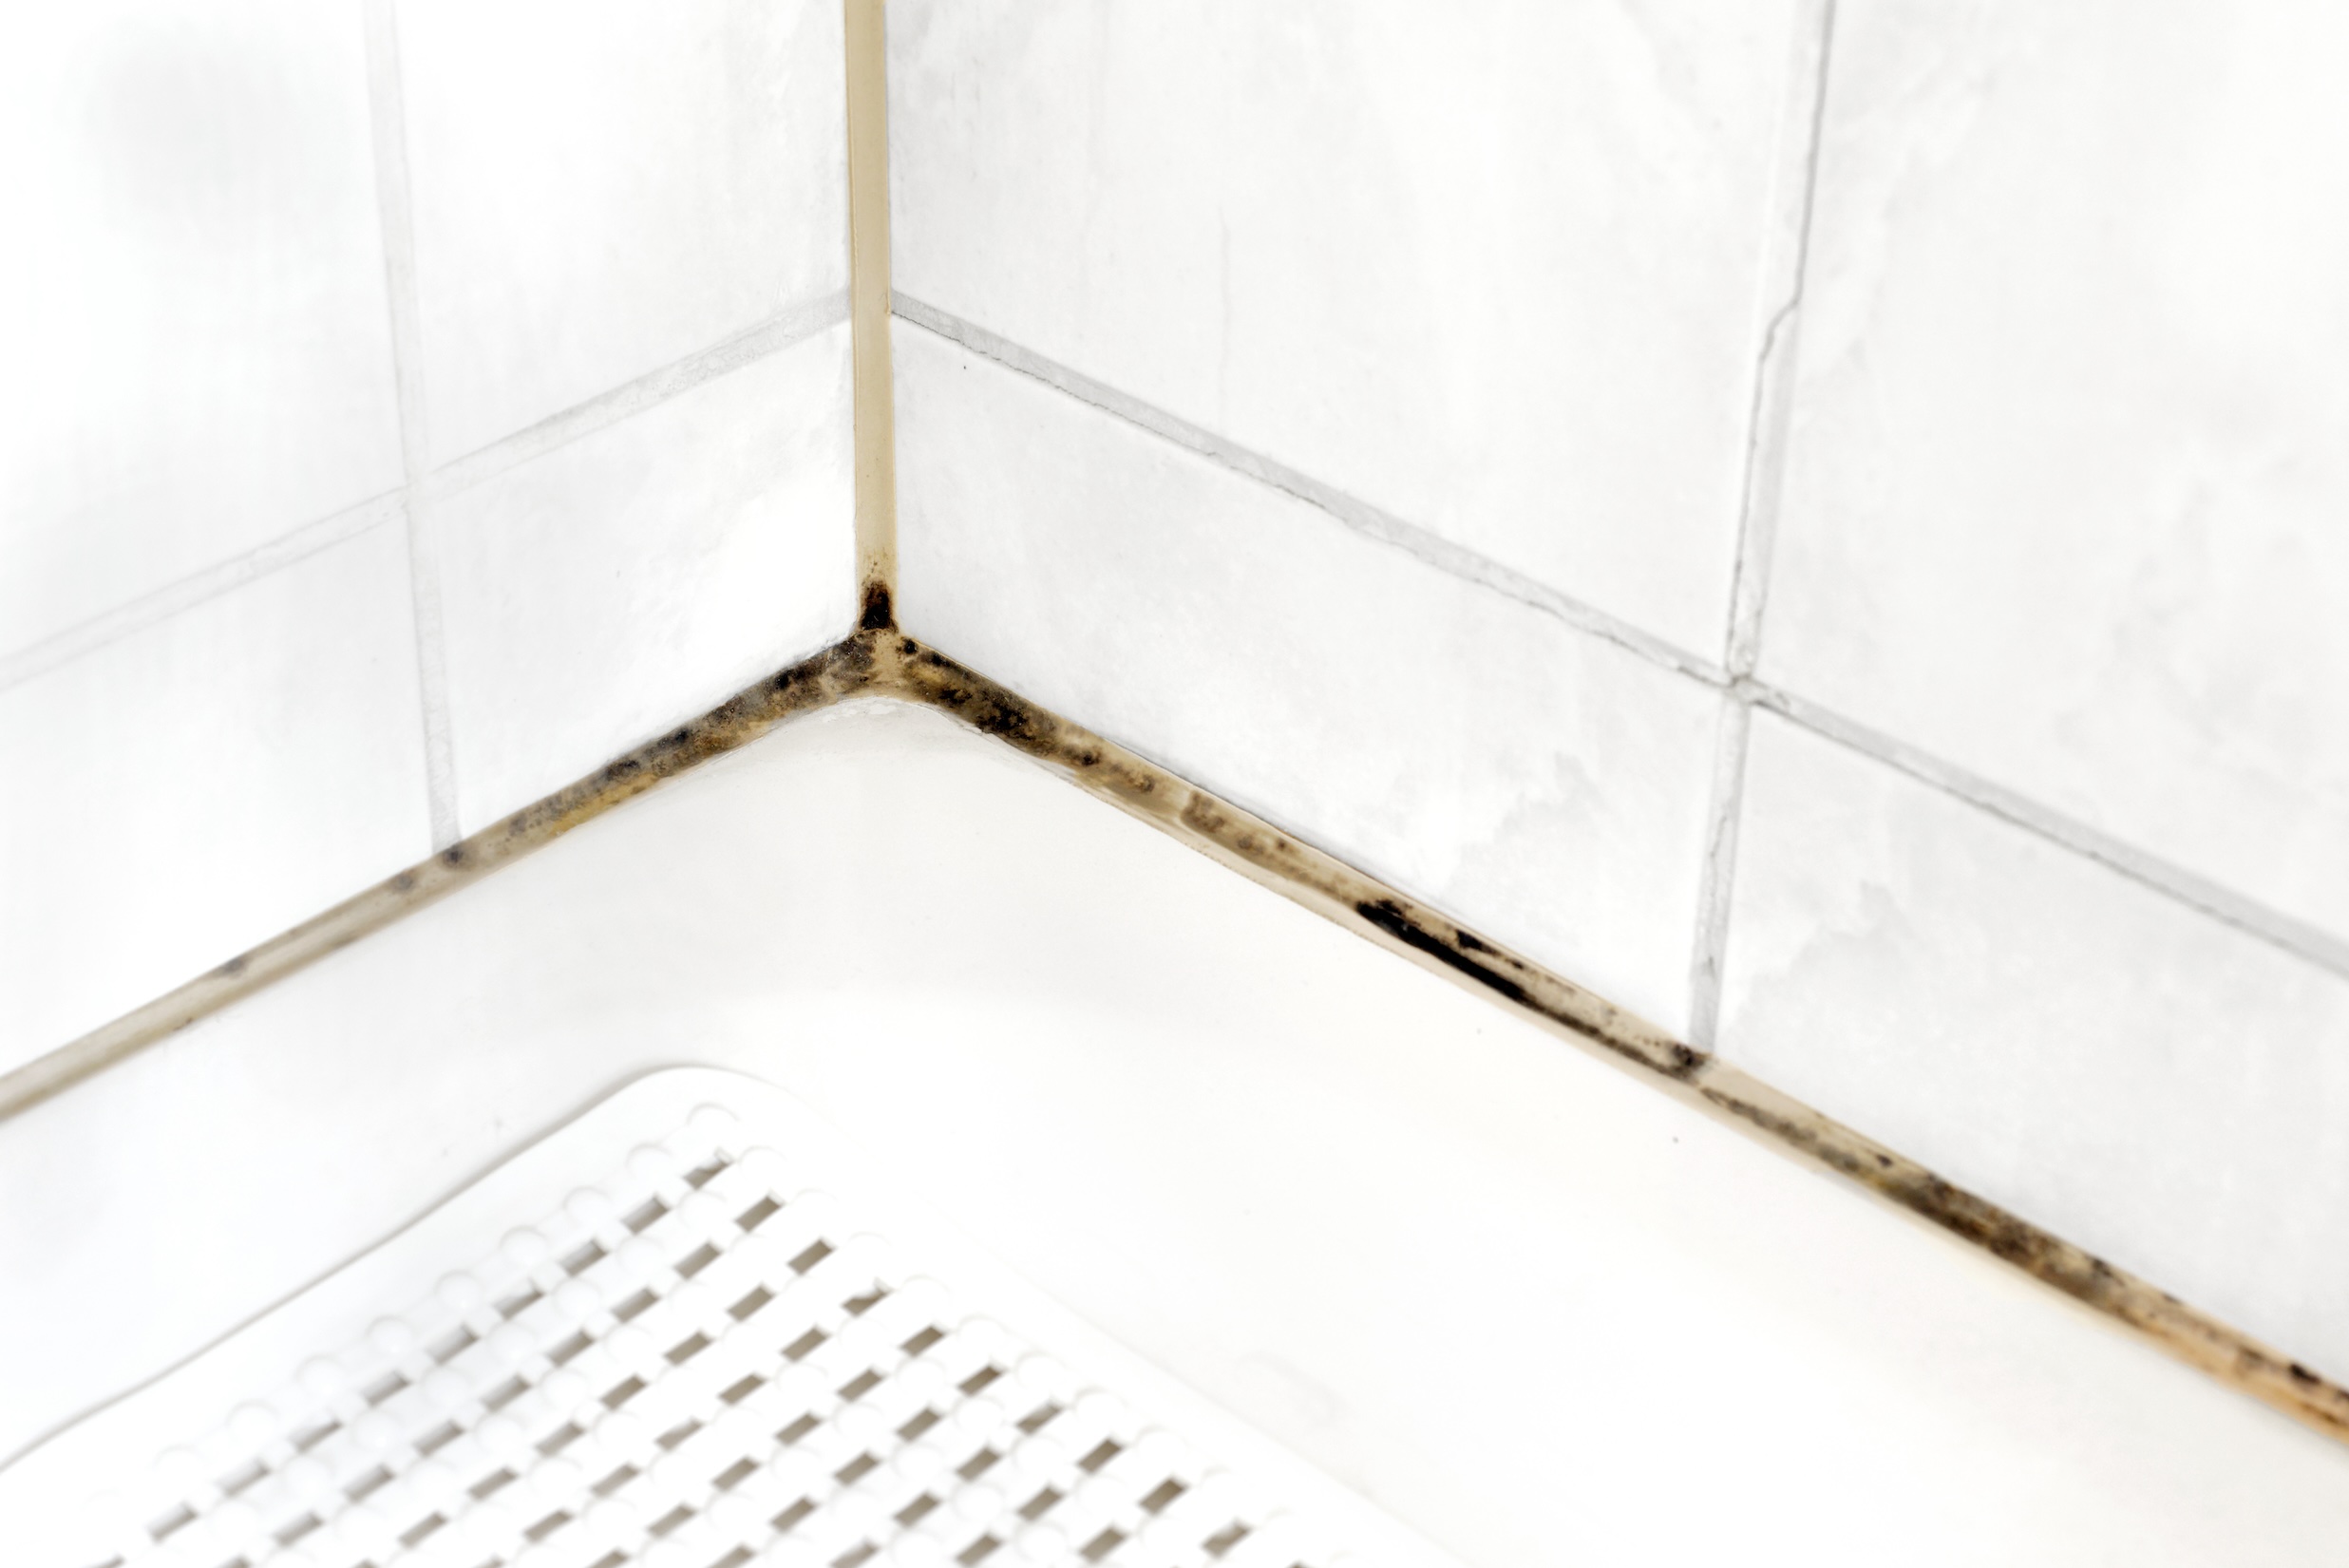 Yksittäisen kylpyhuoneen kosteusvaurio ei suoraan oikeuta koko taloyhtiön kylpyhuoneiden remonttiin, mutta se voi olla syynä laajemman tarkastuksen ja mahdollisen remontin harkintaan.